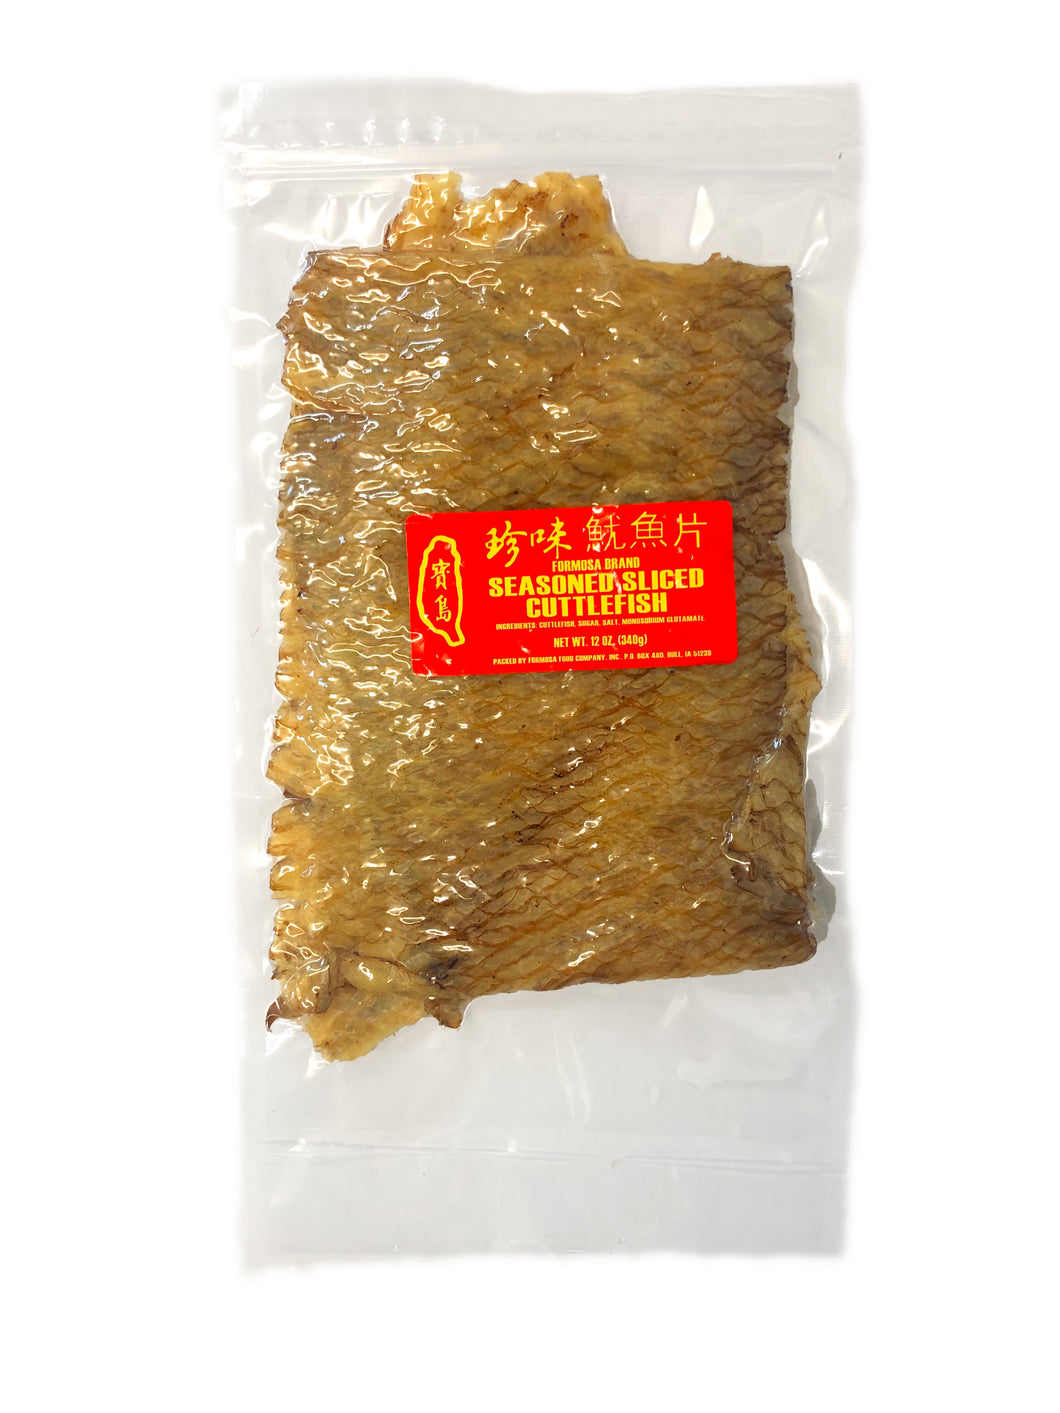 Formosa Seasoned and Sliced Cuttlefish